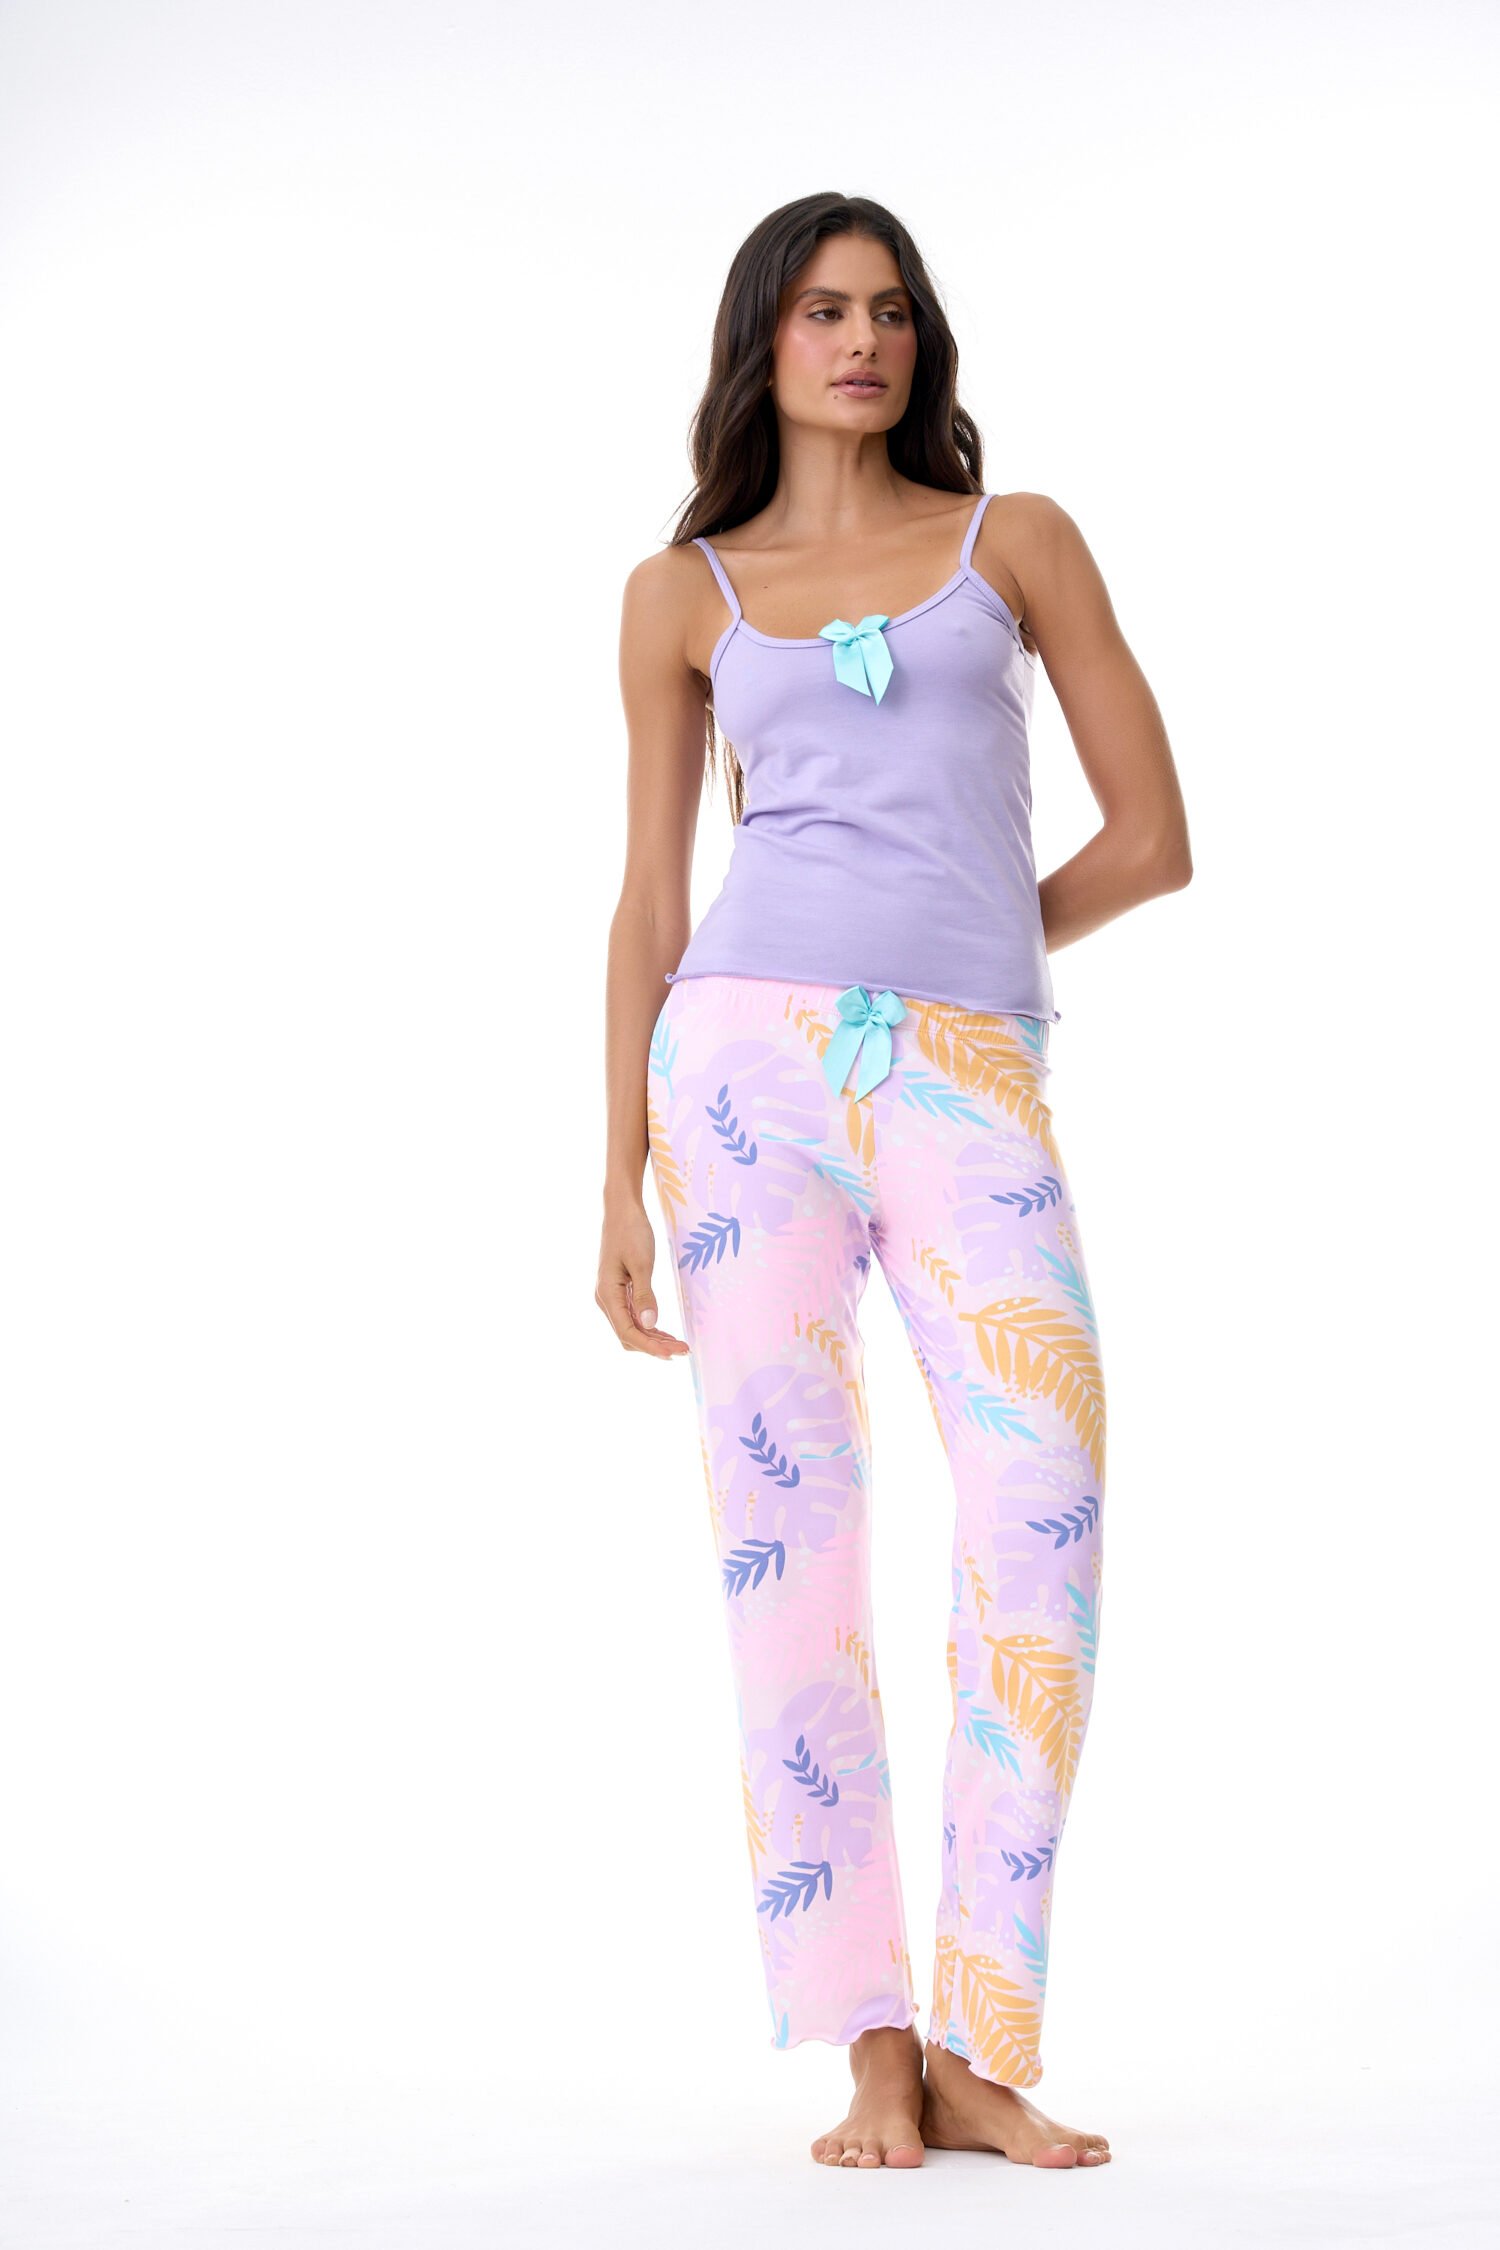 Imagen del producto: Conjunto pantalón tropical rosa blusa morada